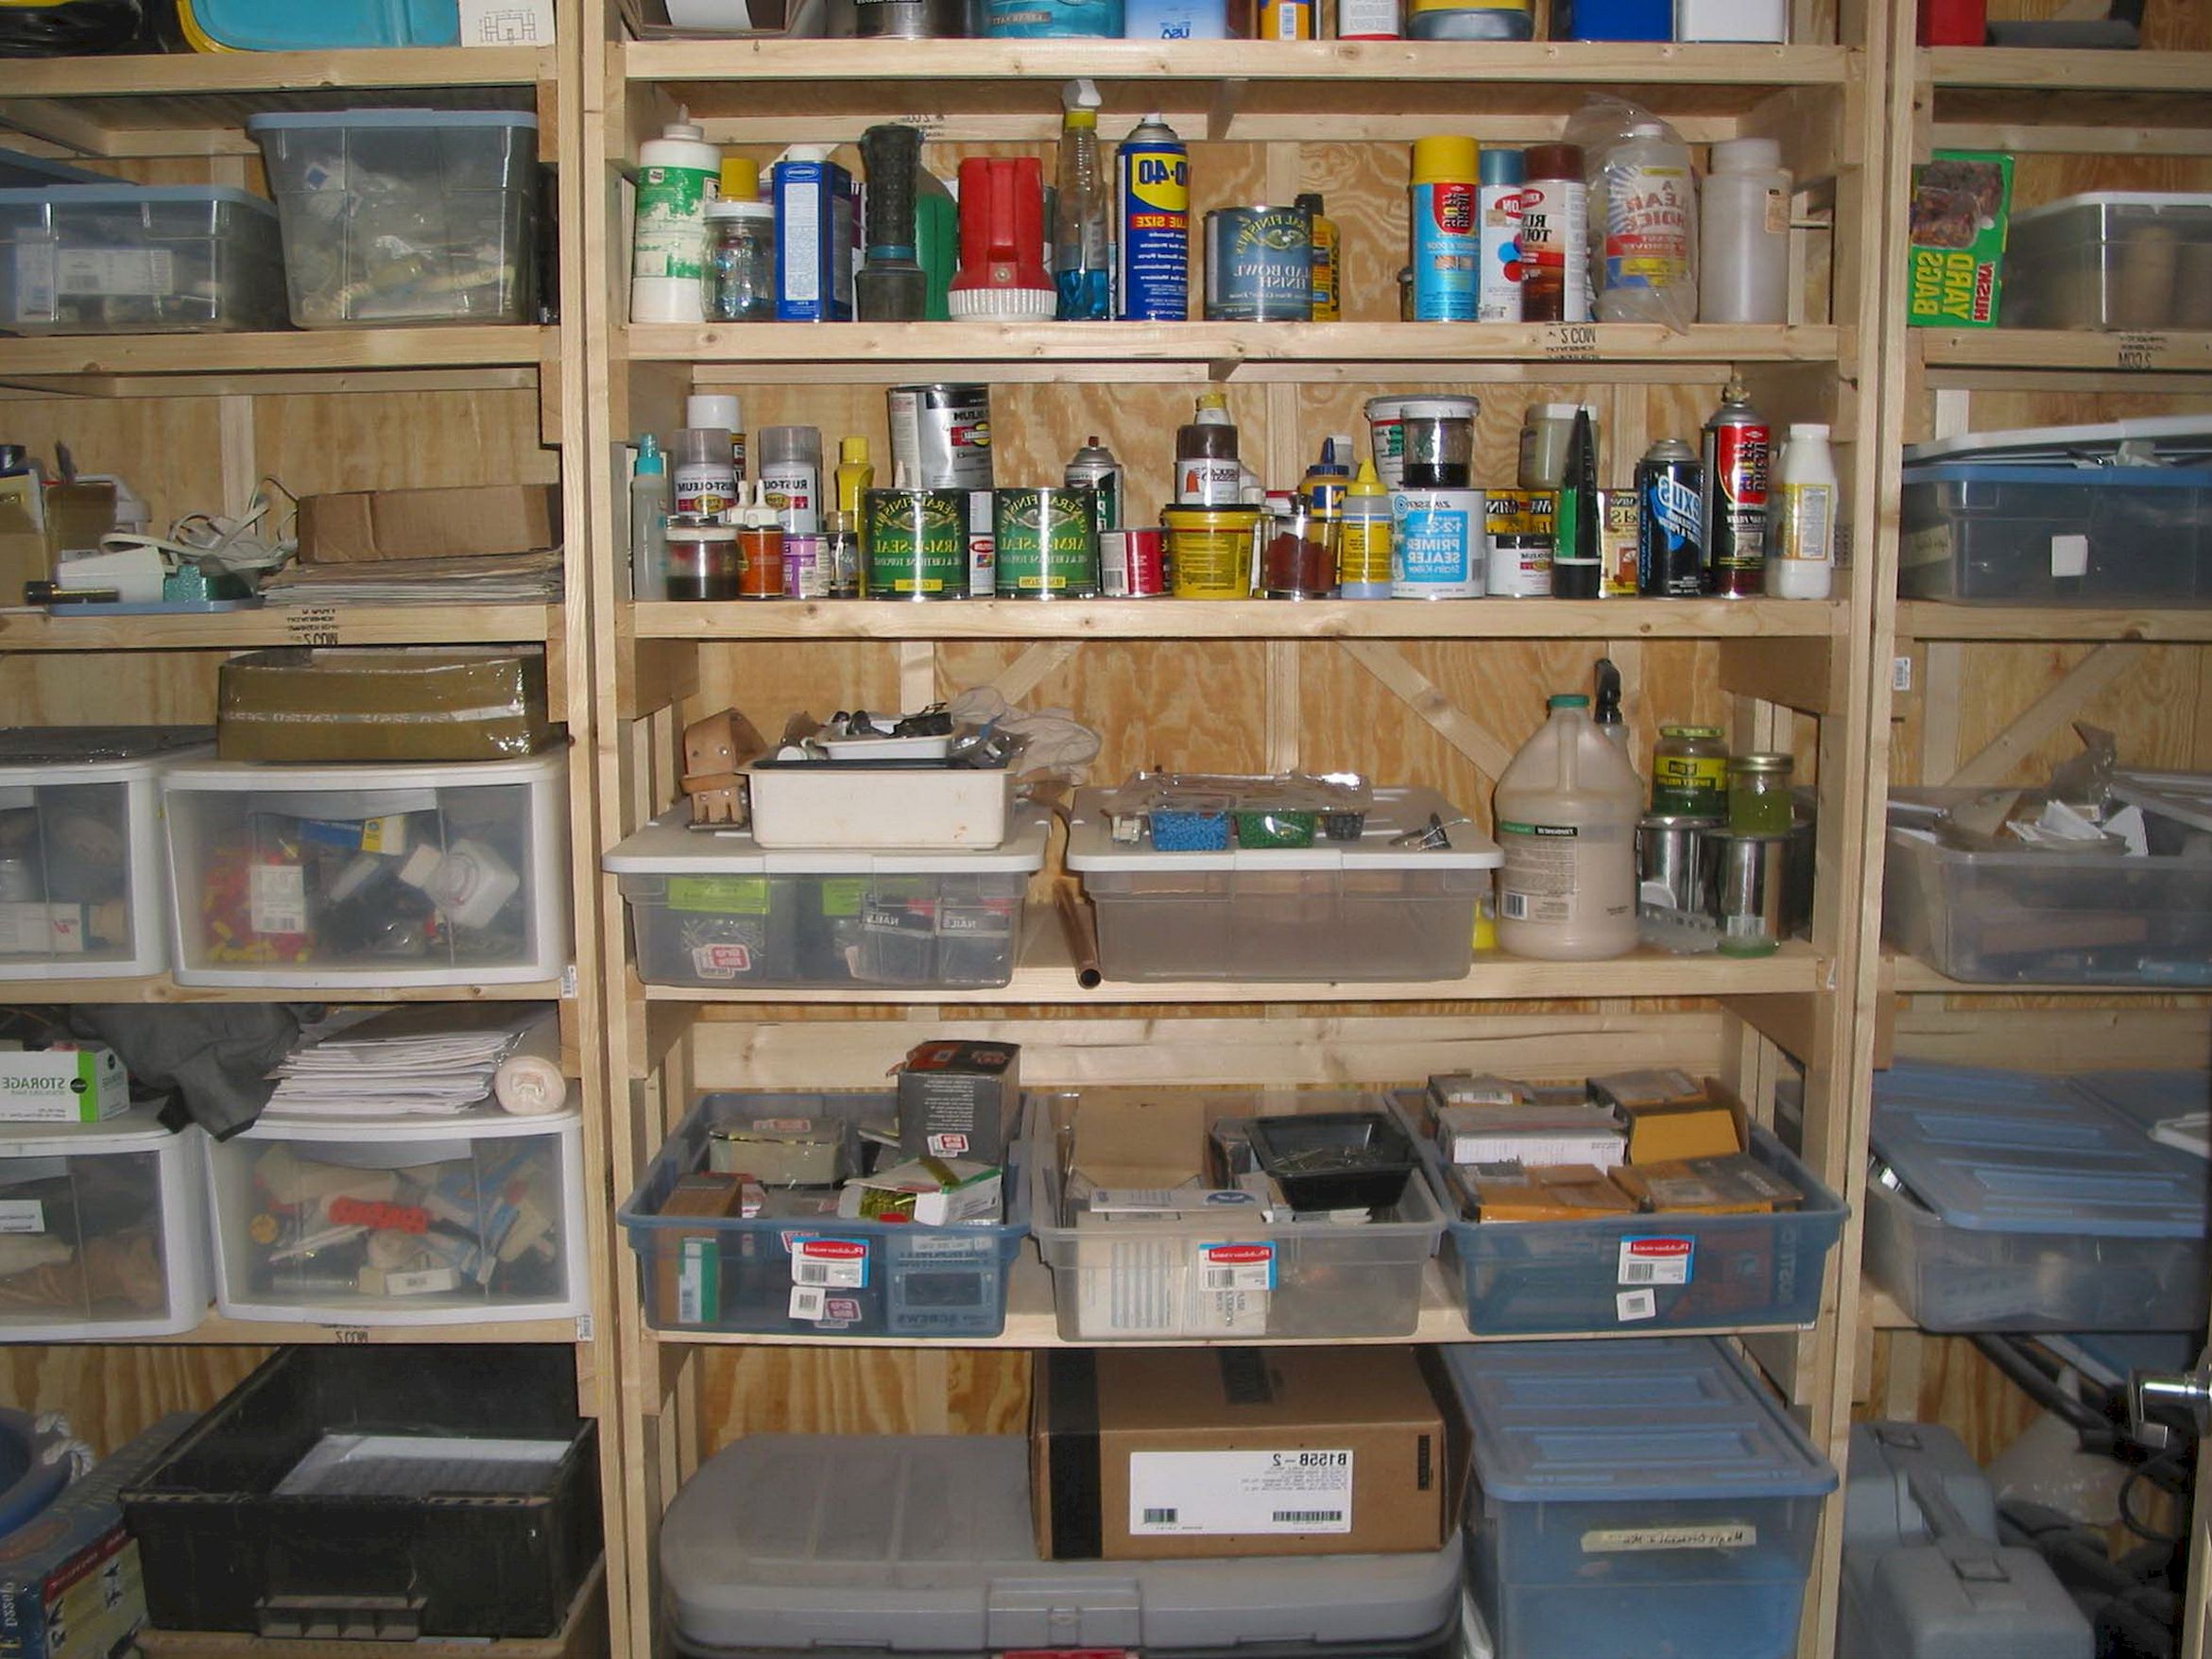 Kitchen Wall Shelving Units photo - 1